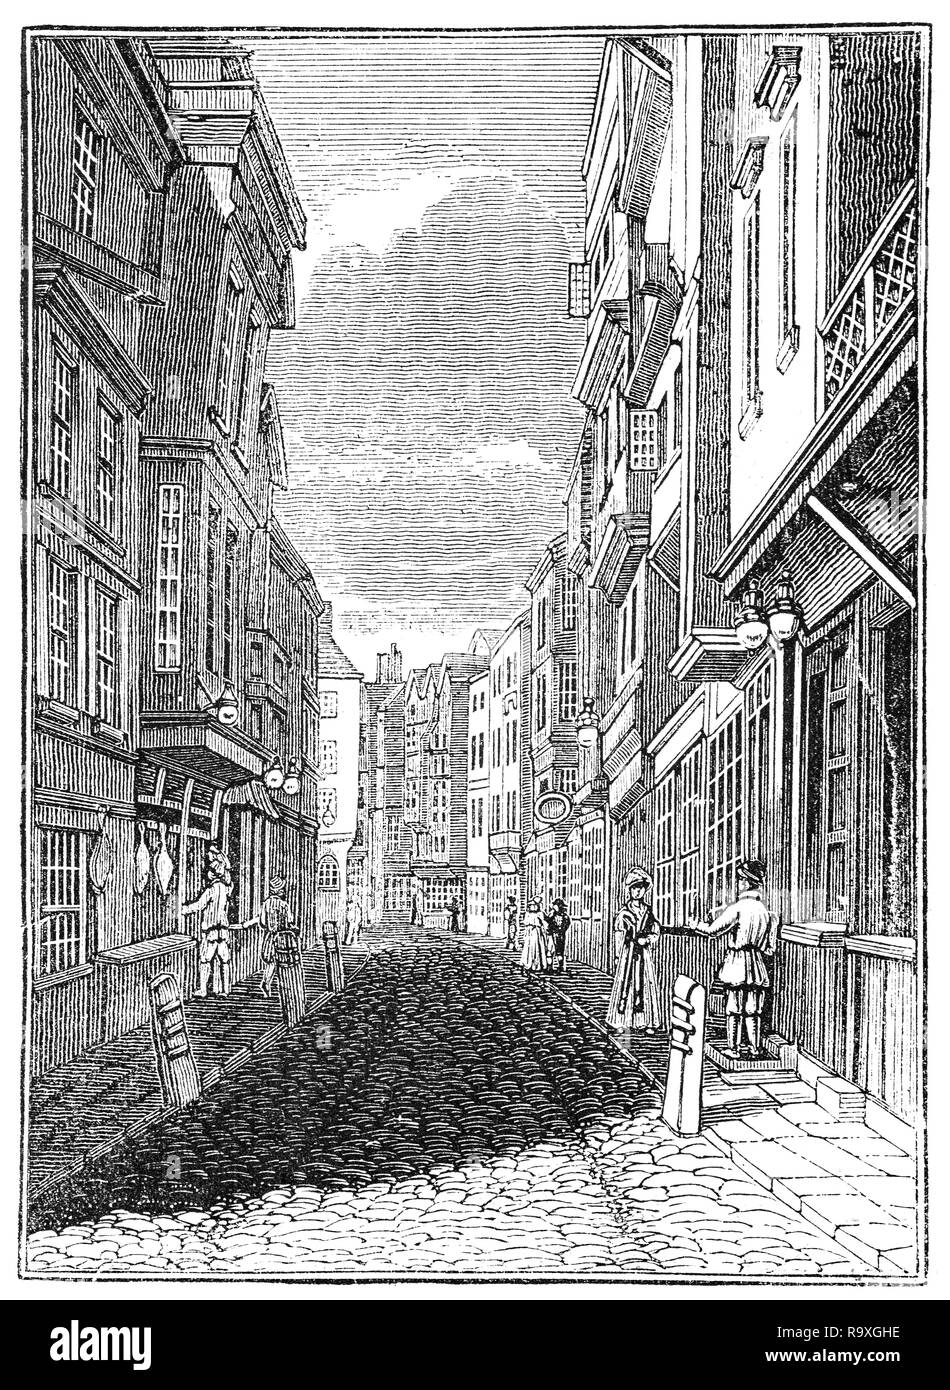 Una vista fino Butcher Row, concessi ai macellai da re Edoardo I, da Temple Bar. Pur essendo una strada molto stretta è stato uno dei principali accessi alla città di Londra, Inghilterra Foto Stock